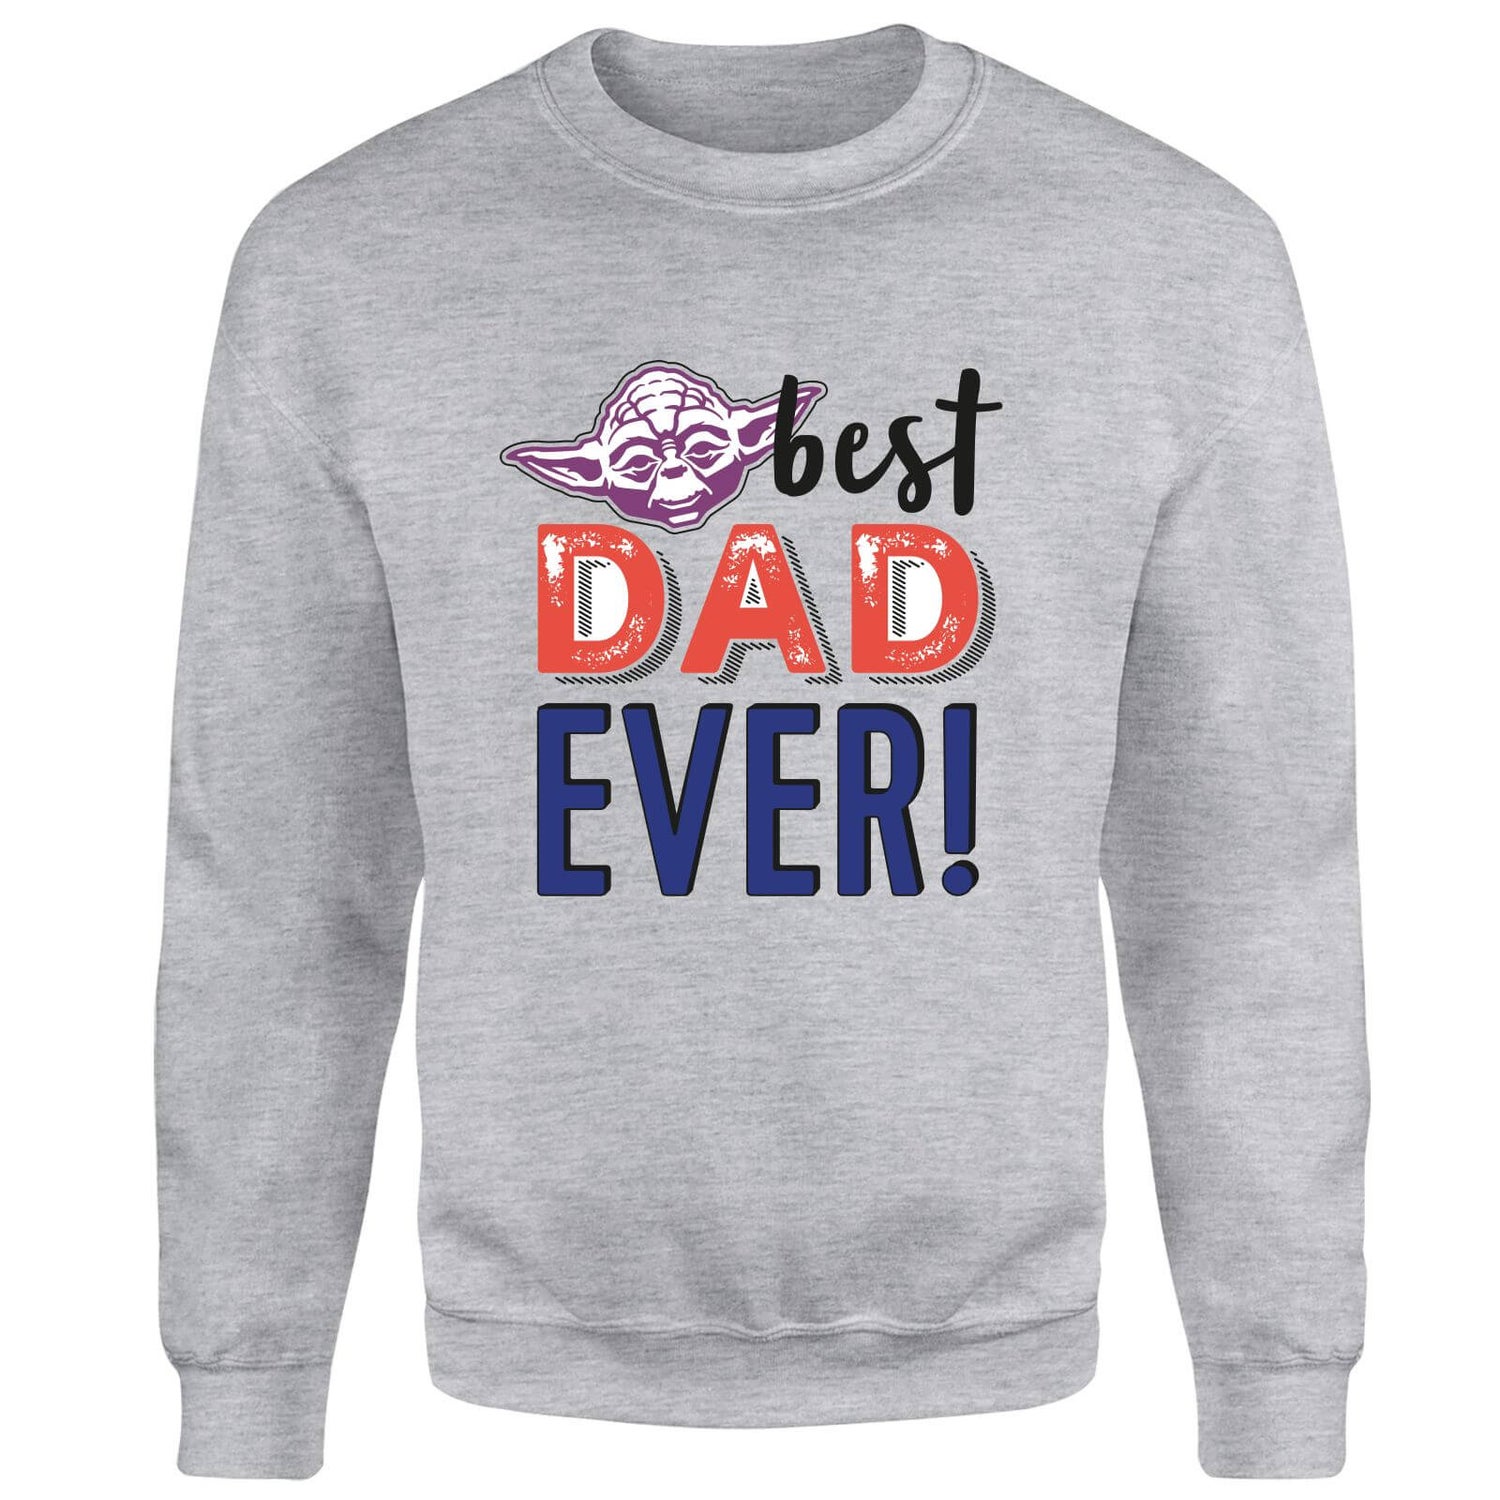 Best Dad Ever! Sweatshirt - Grey